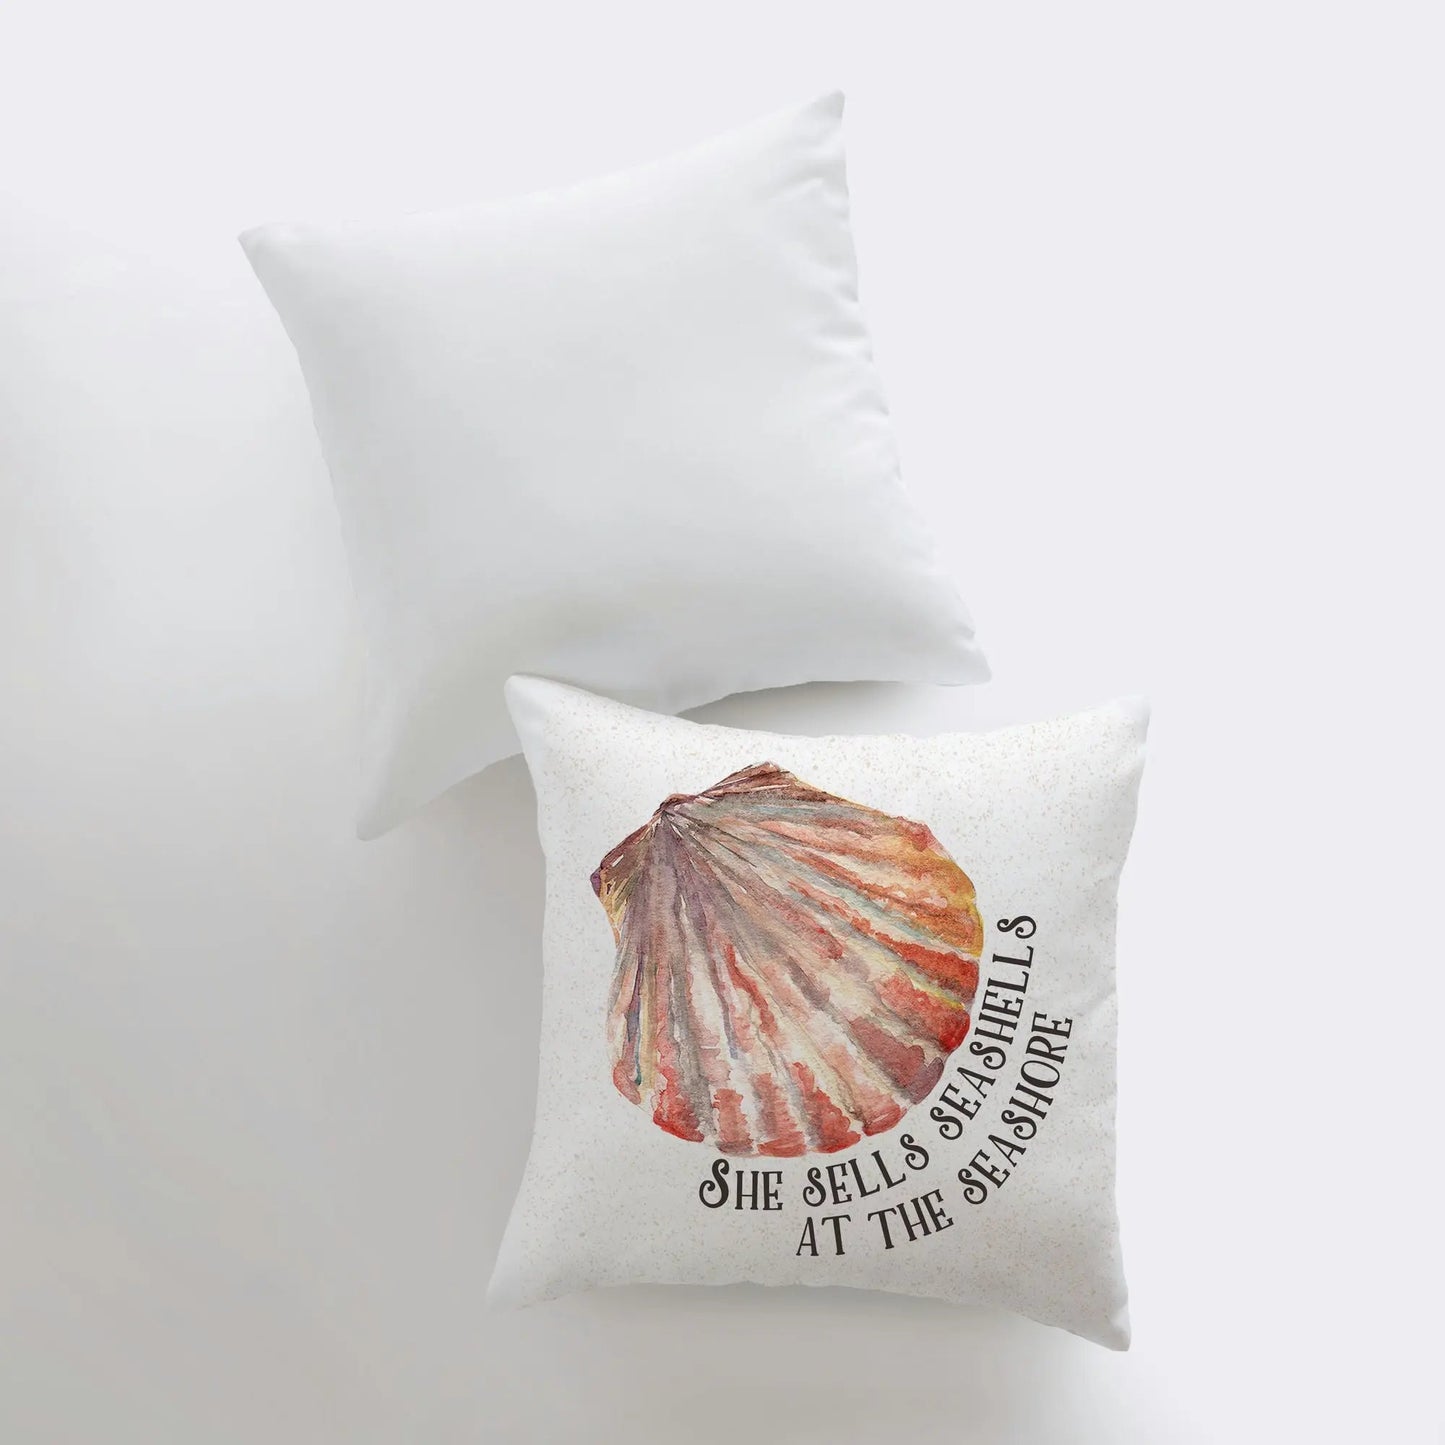 She Sells Sea Shells at the Sea Shore Throw Pillow